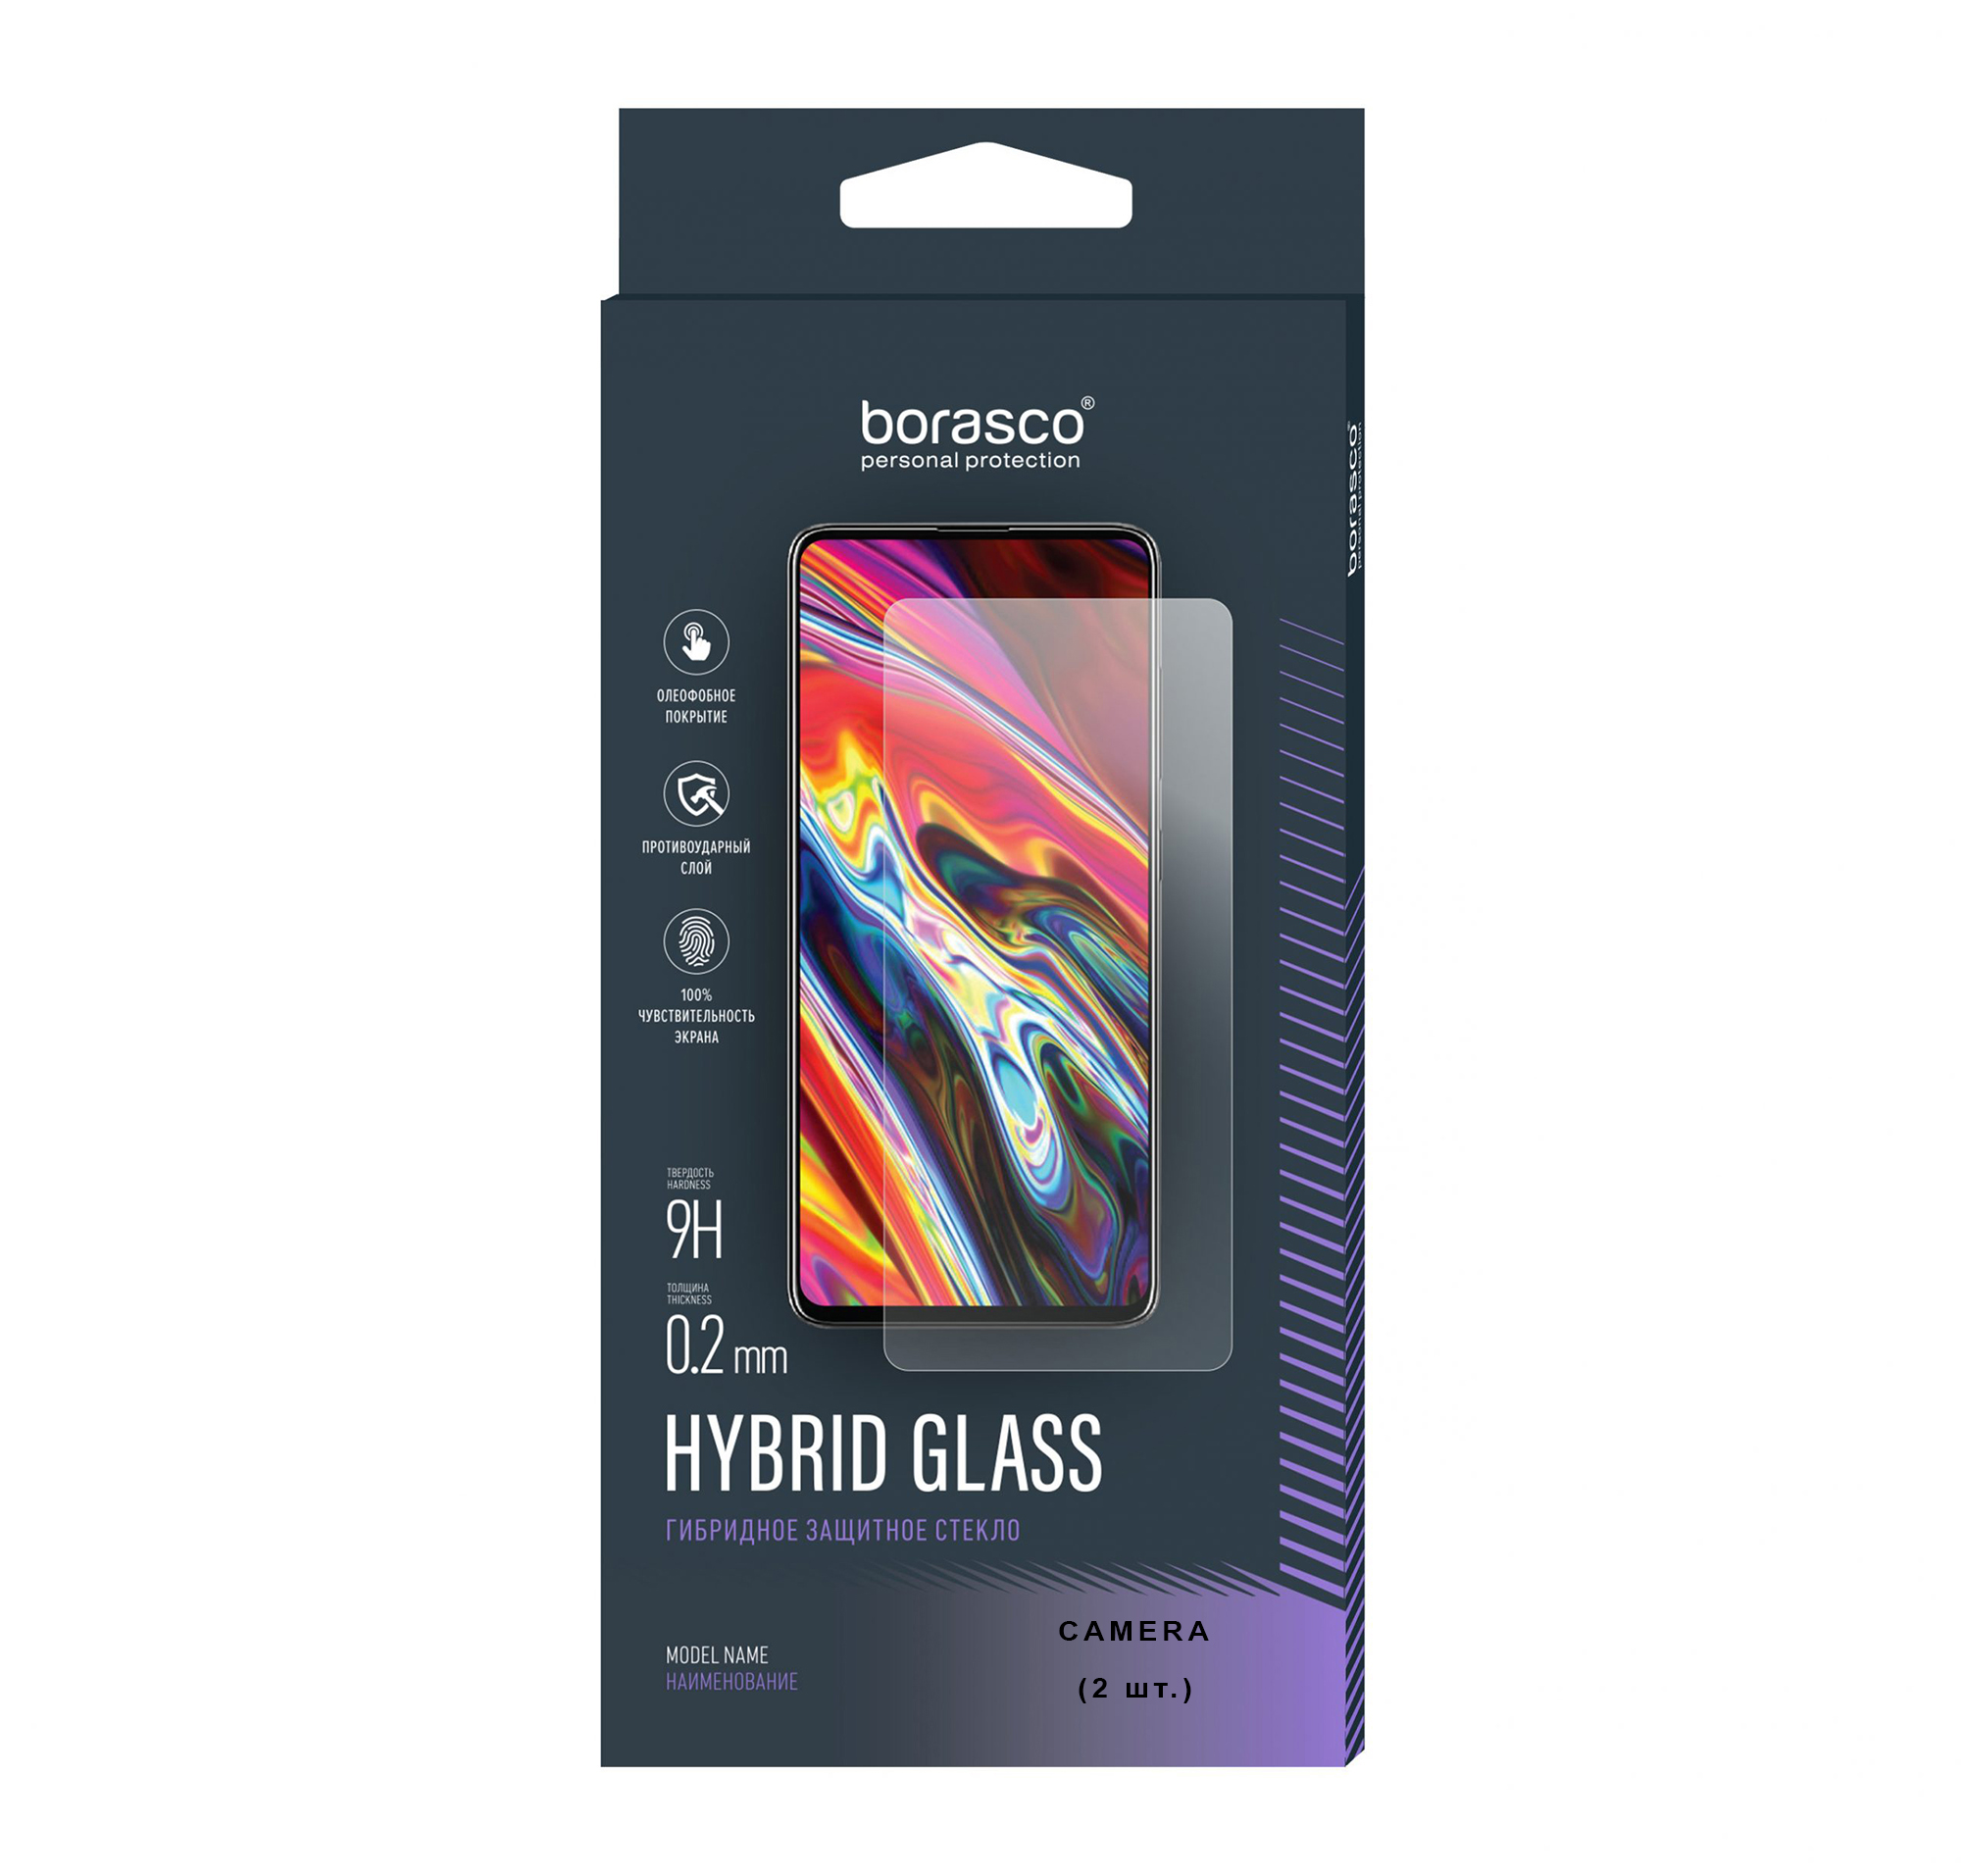 Защитное стекло (Экран+Камера) Hybrid Glass для Vivo V17 чехол кобура mypads pochette для vivo v17